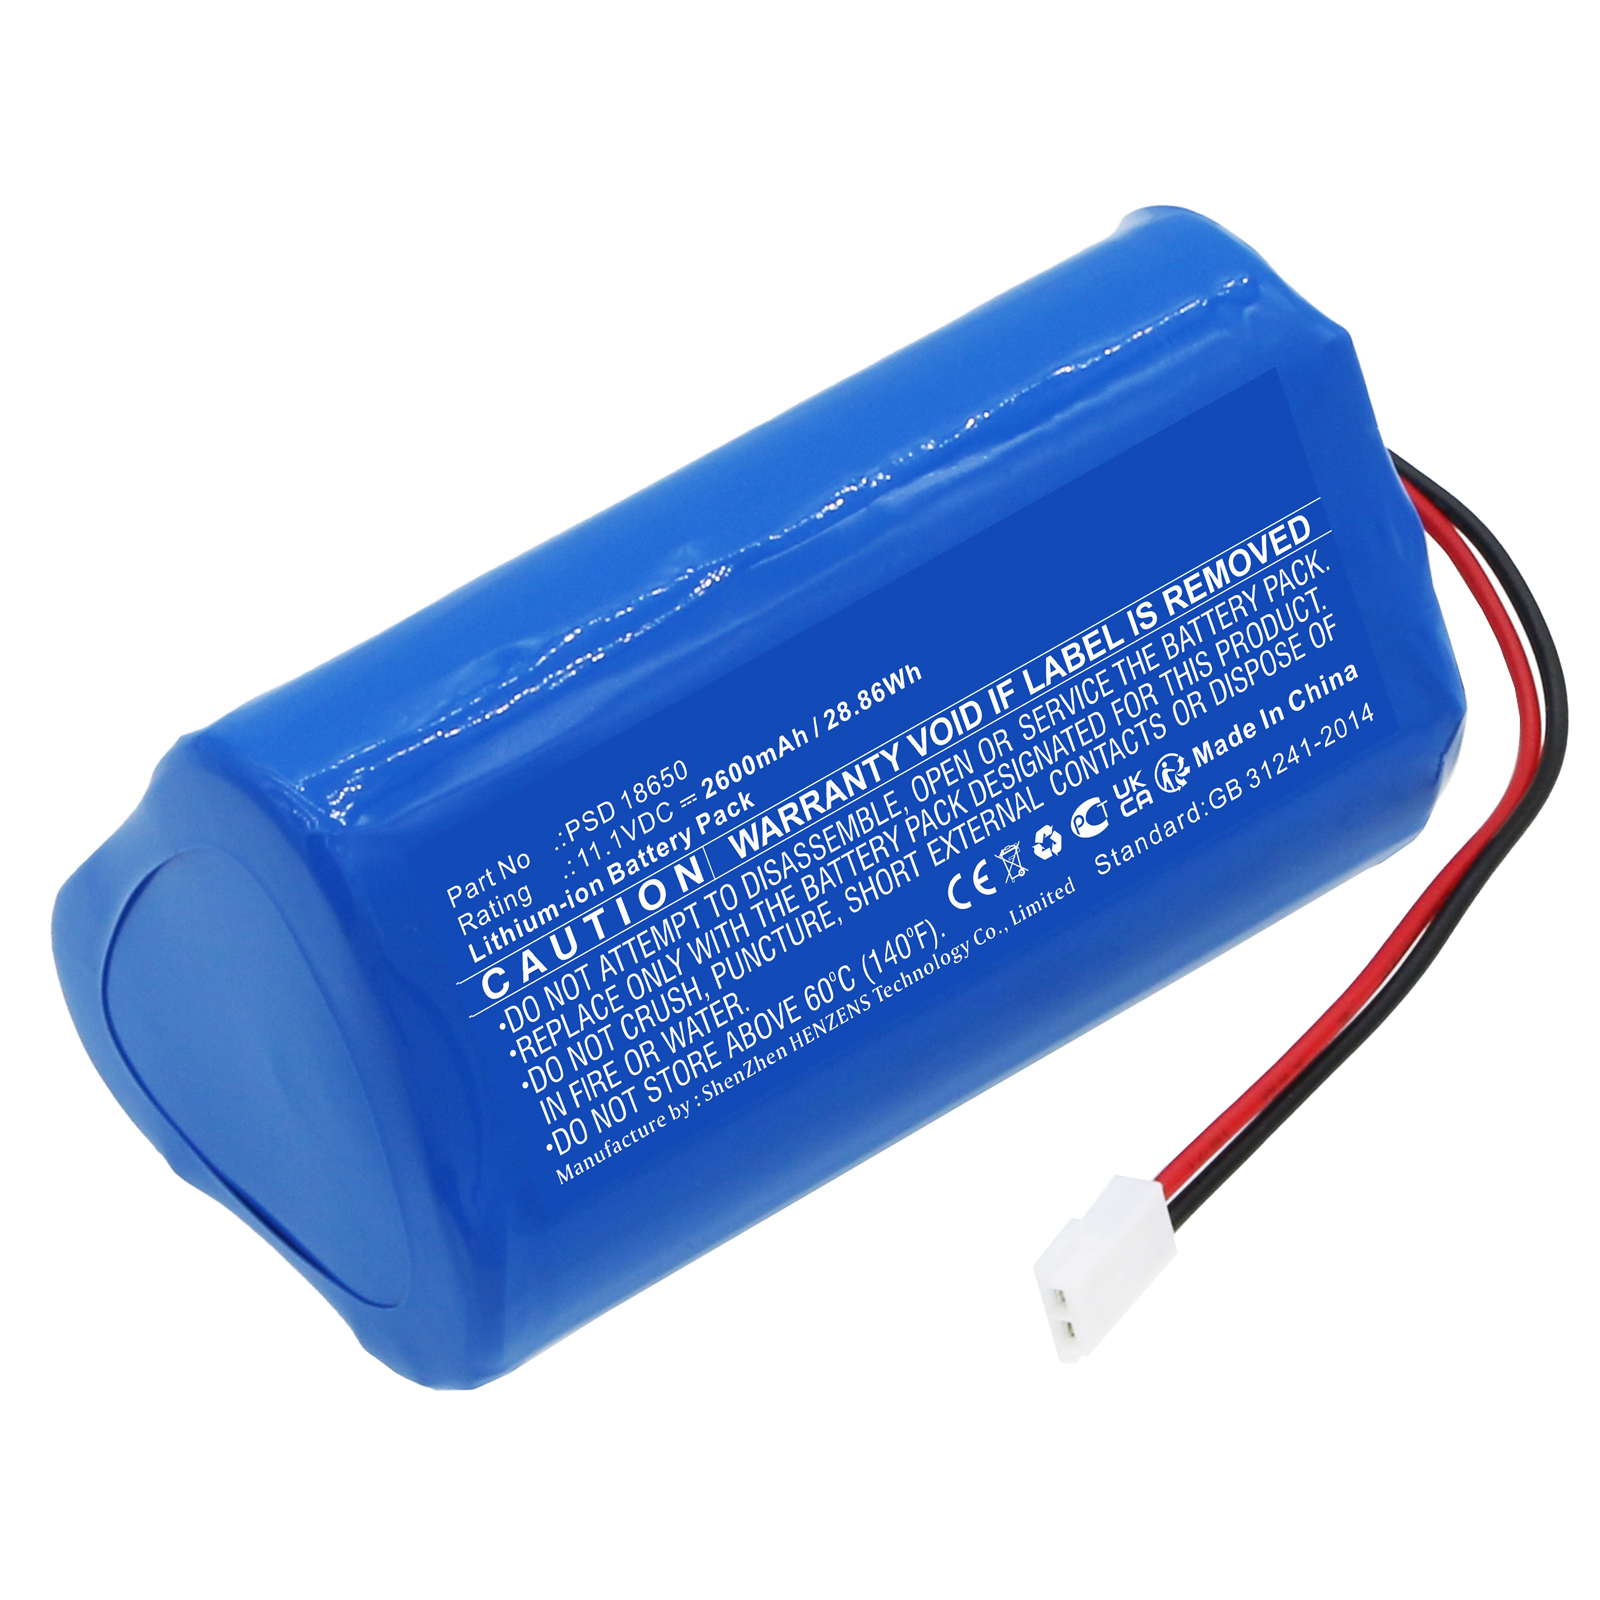 Synergy Digital Vacuum Cleaner Battery, Compatible with Aquajack PSD 18650 Vacuum Cleaner Battery (Li-ion, 11.1V, 2600mAh)